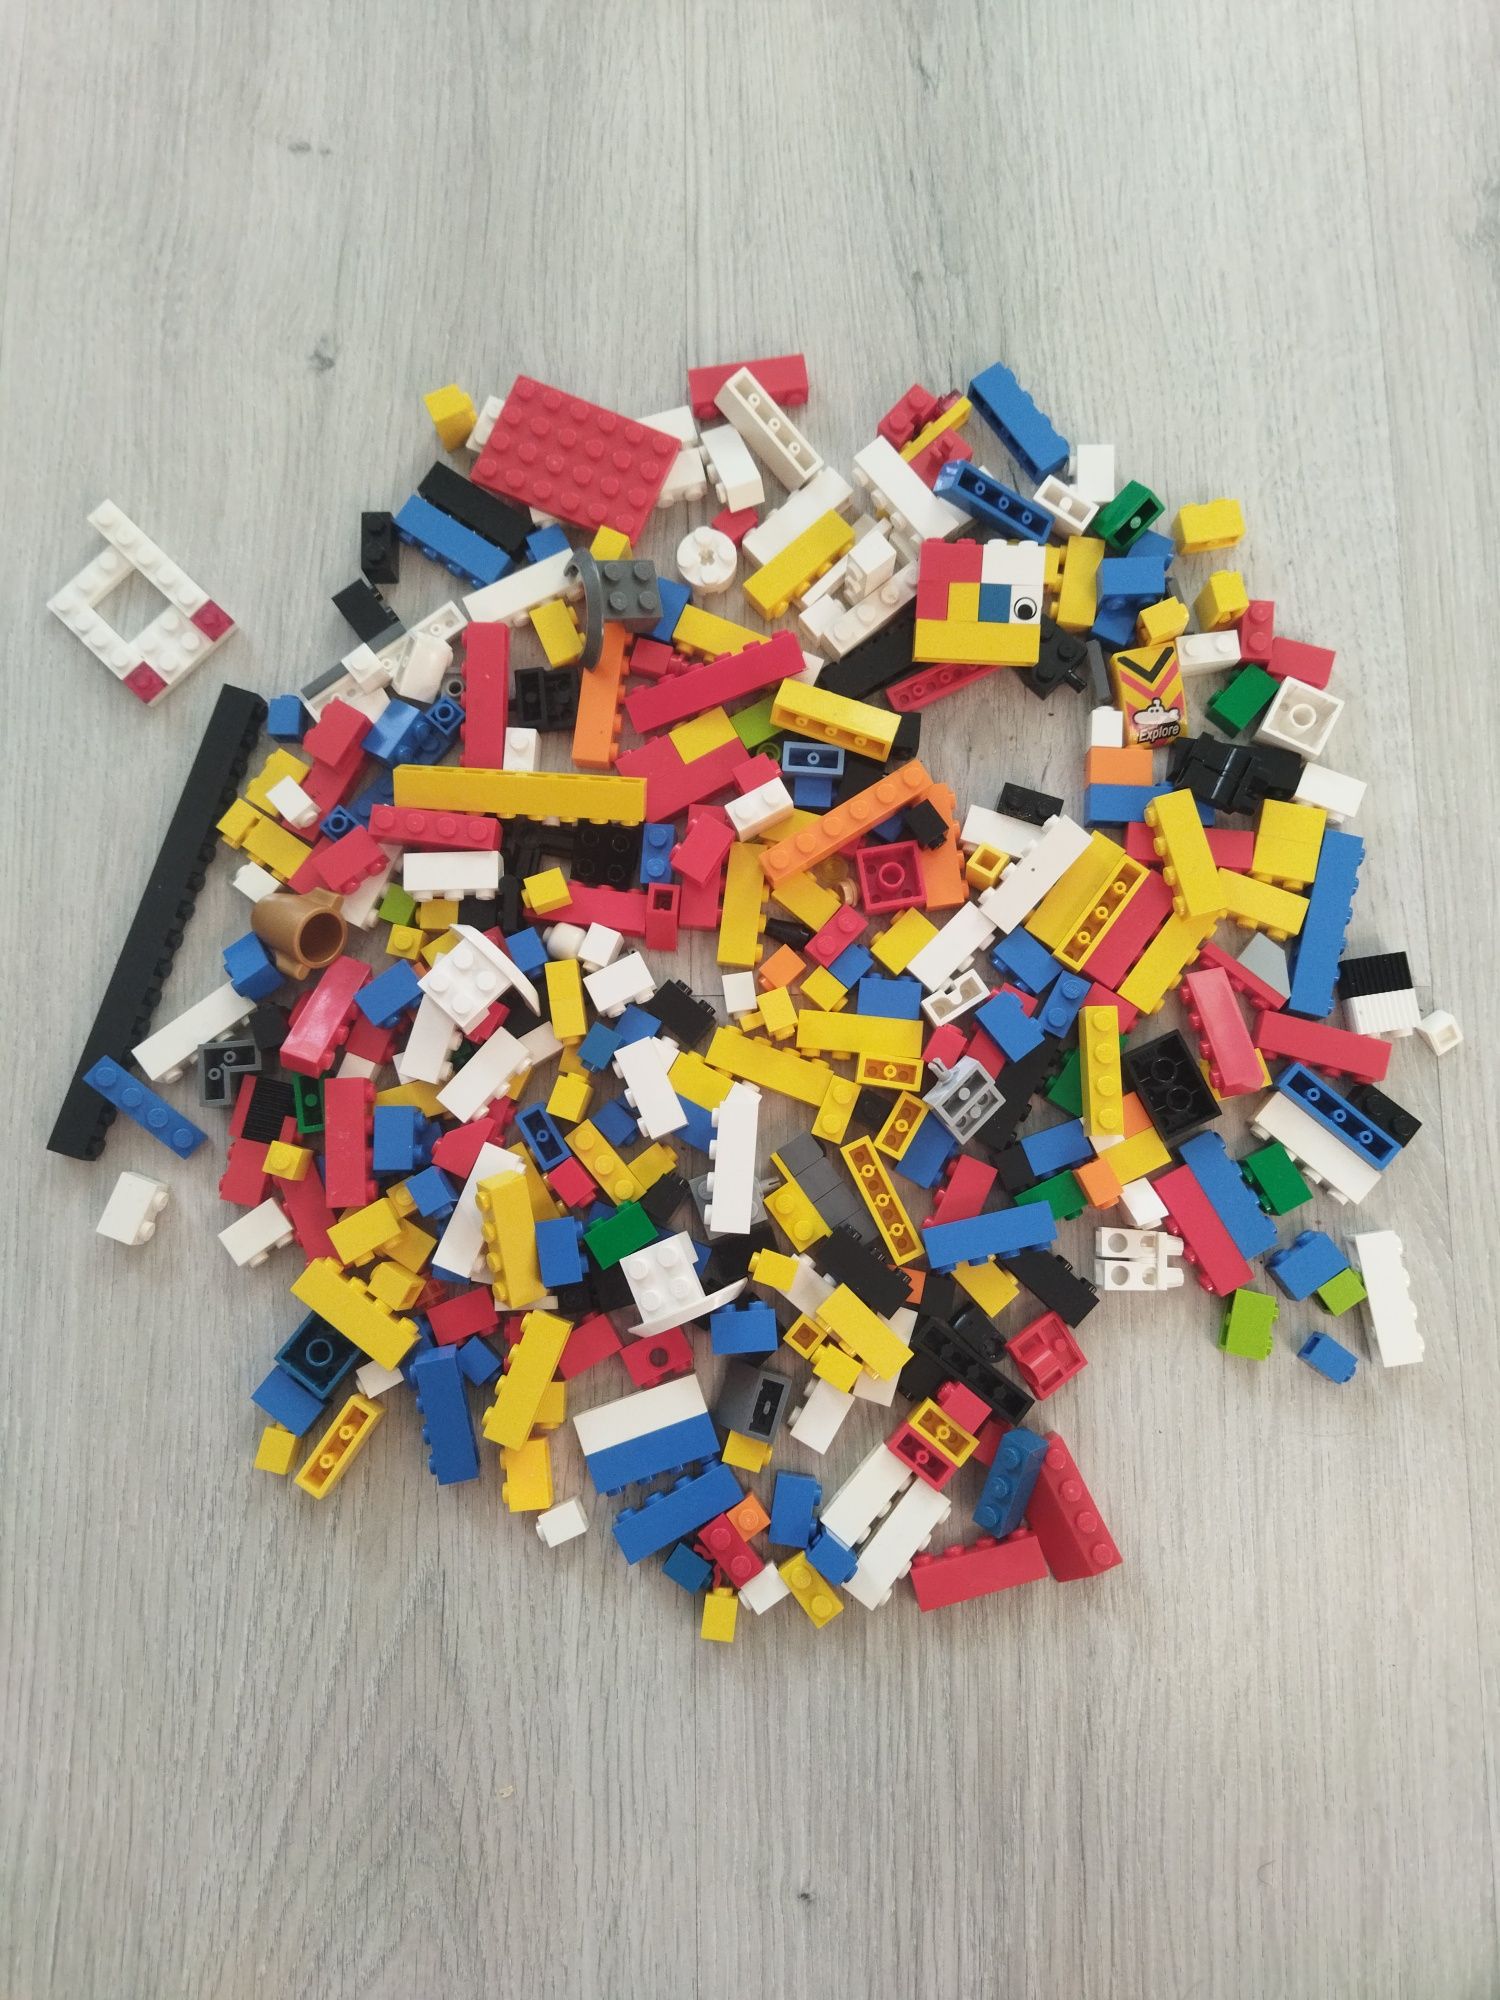 Детали от разных конструкторов LEGO/Лего